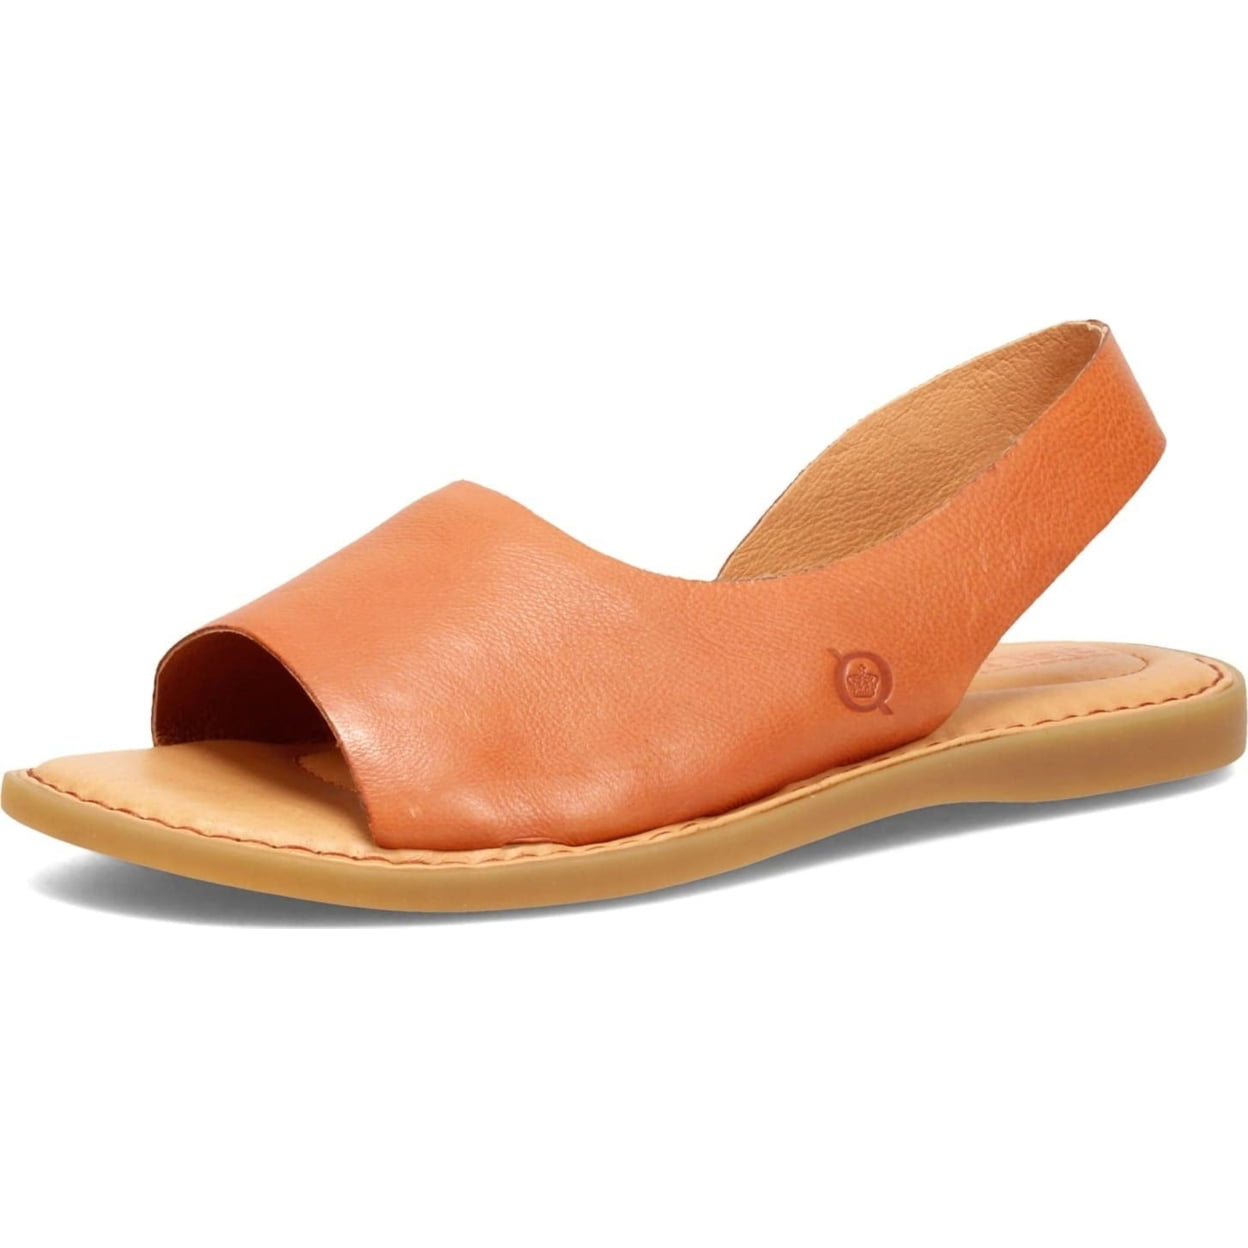 Born Sandals, slides and flip flops for Men | Online Sale up to 48% off |  Lyst